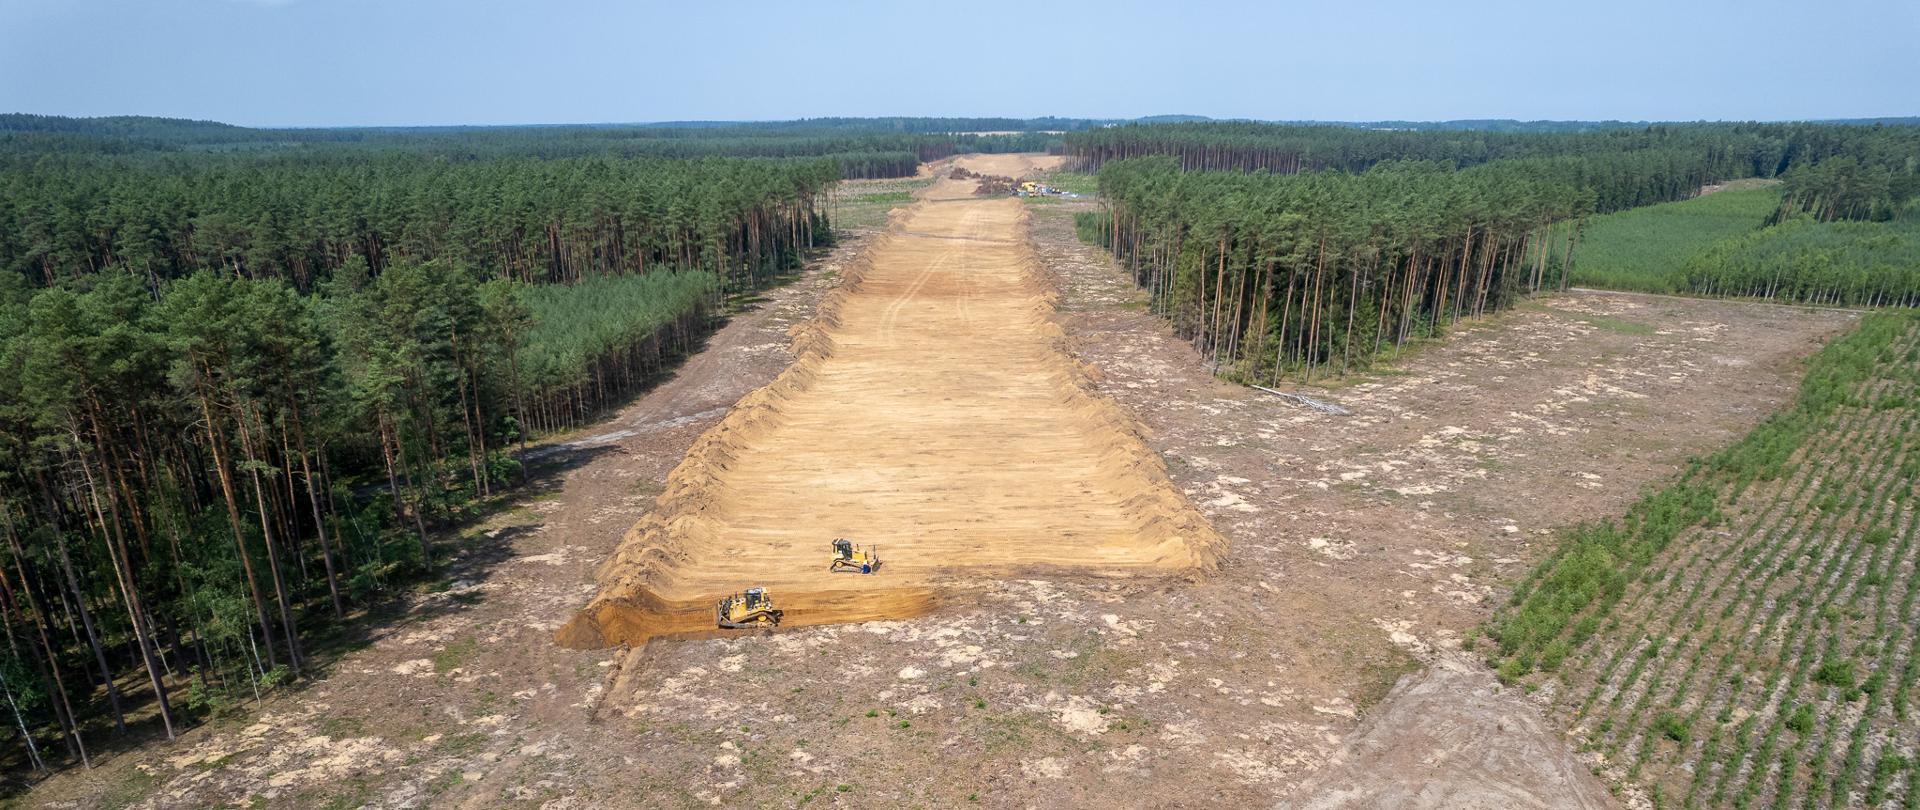 Odhumusowanie terenu na budowie S6 Koszalin - Zegrze